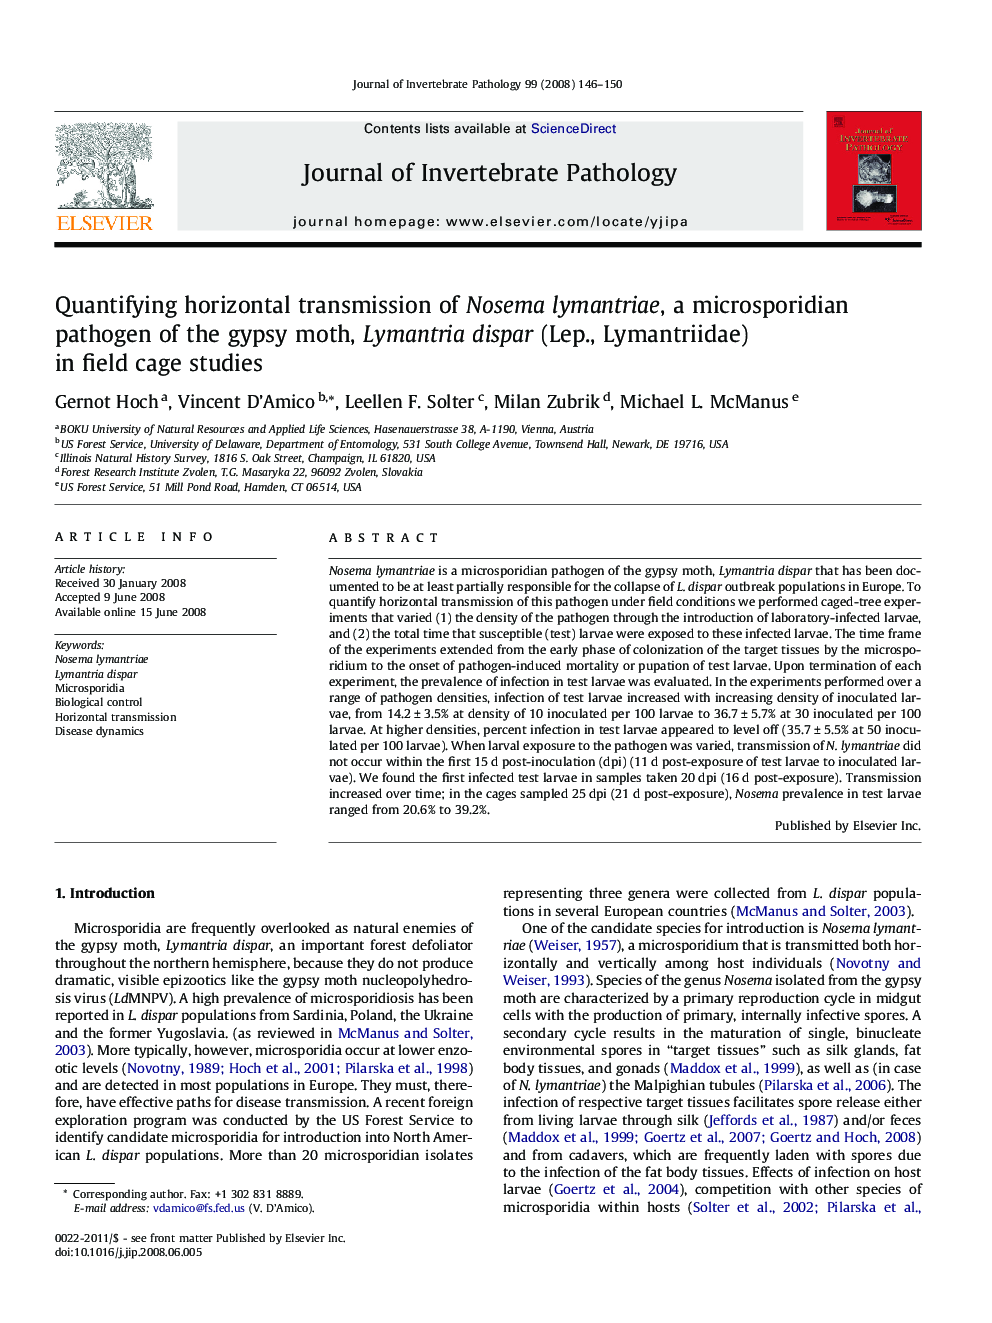 Quantifying horizontal transmission of Nosema lymantriae, a microsporidian pathogen of the gypsy moth, Lymantria dispar (Lep., Lymantriidae) in field cage studies